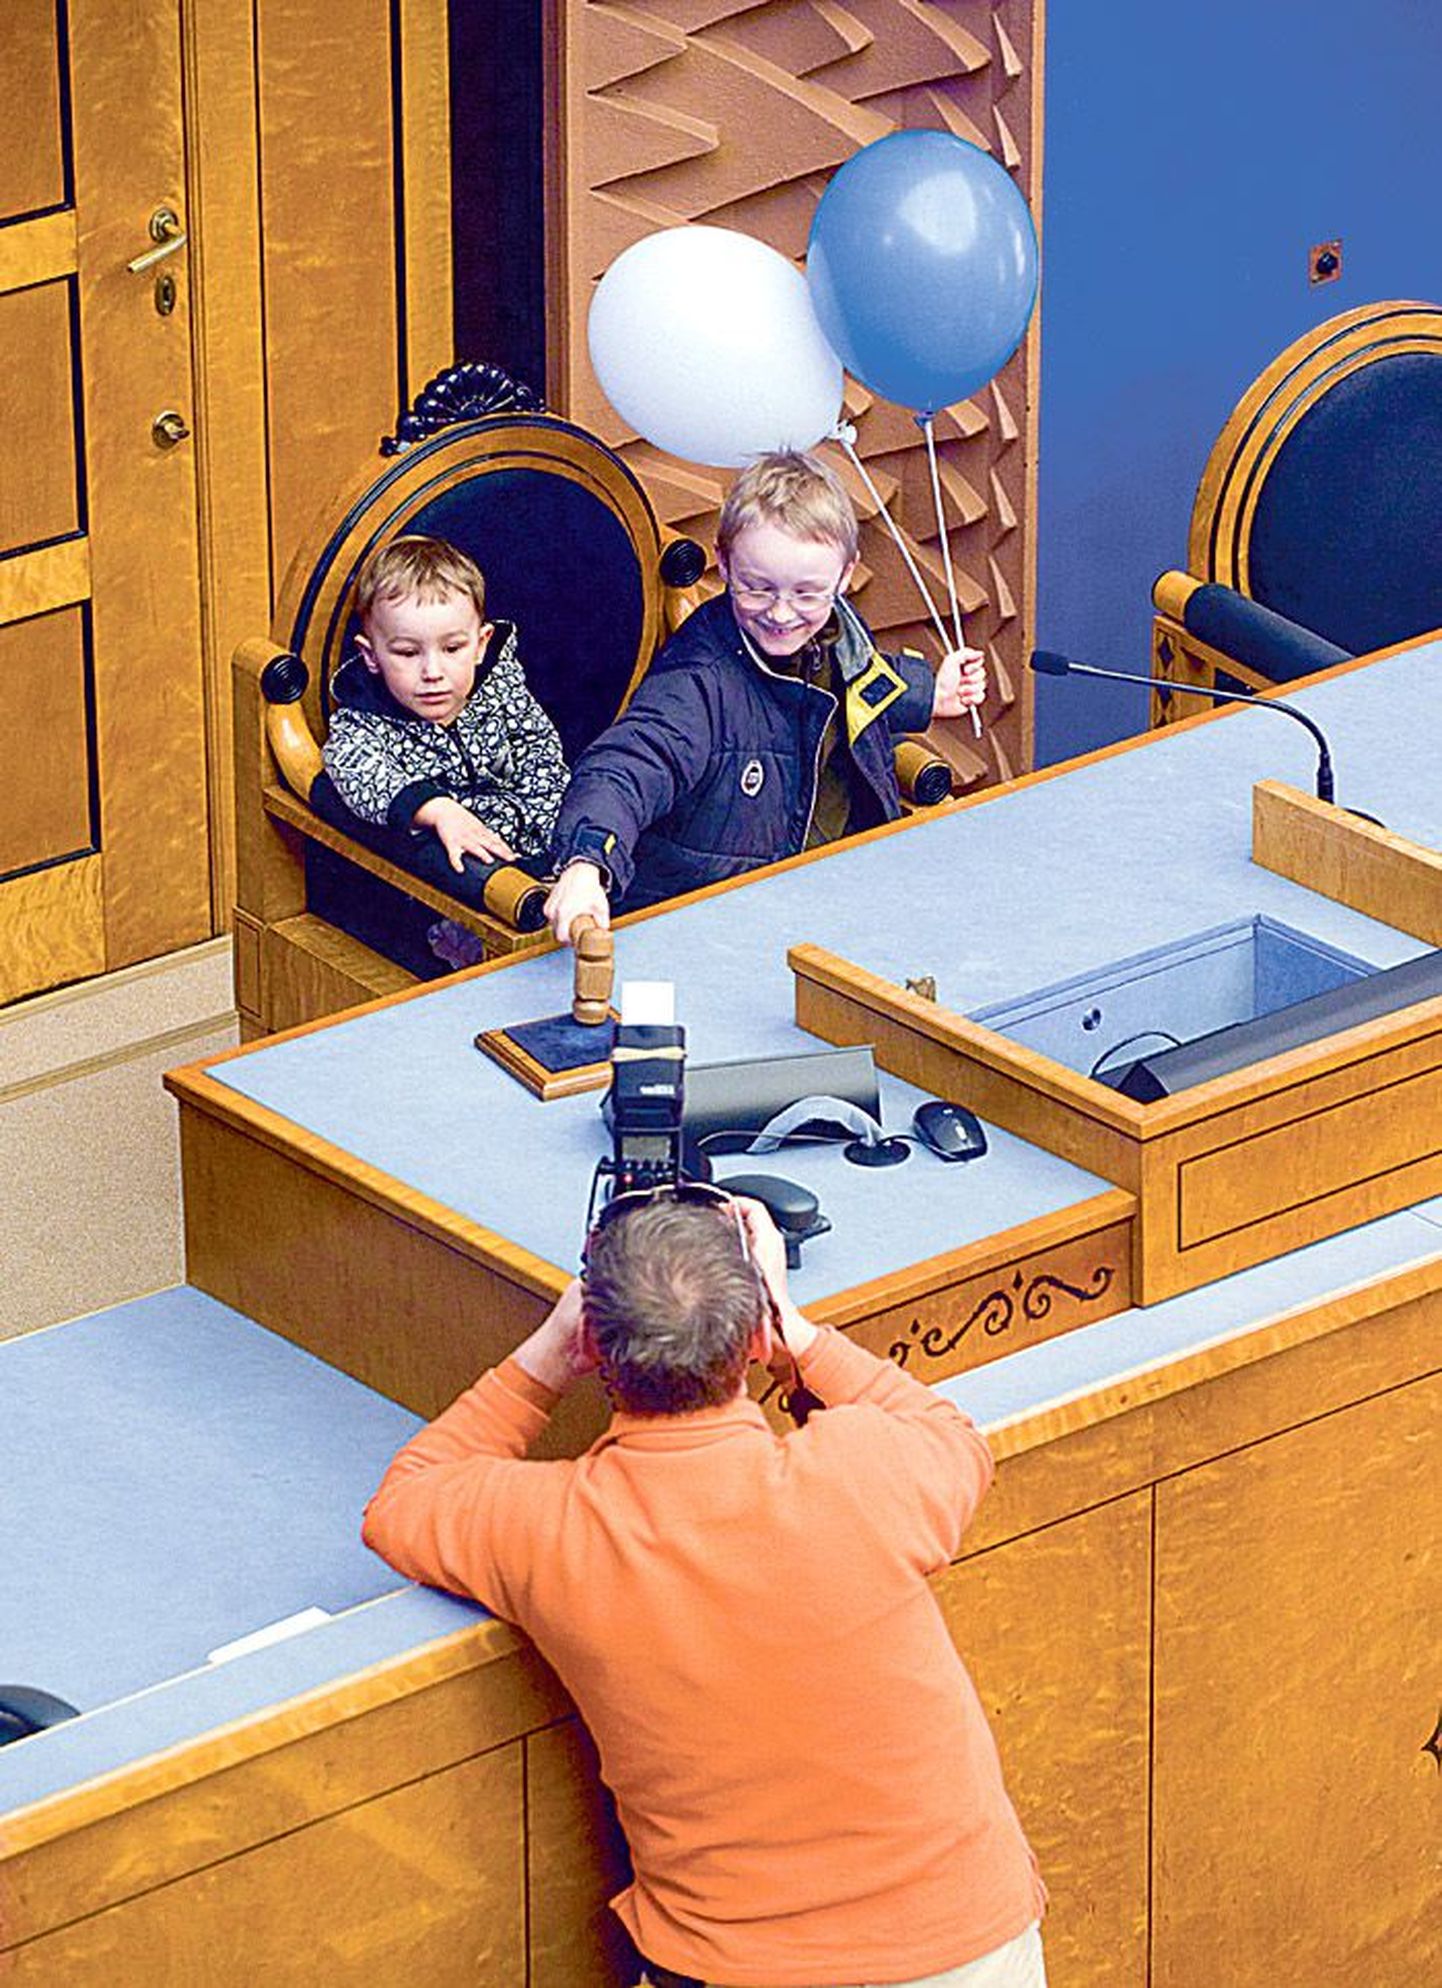 Õhtulehe fotograaf Arno Saar pildistab ajutiselt riigikogu esimehe tooli hõivanud lapsi.